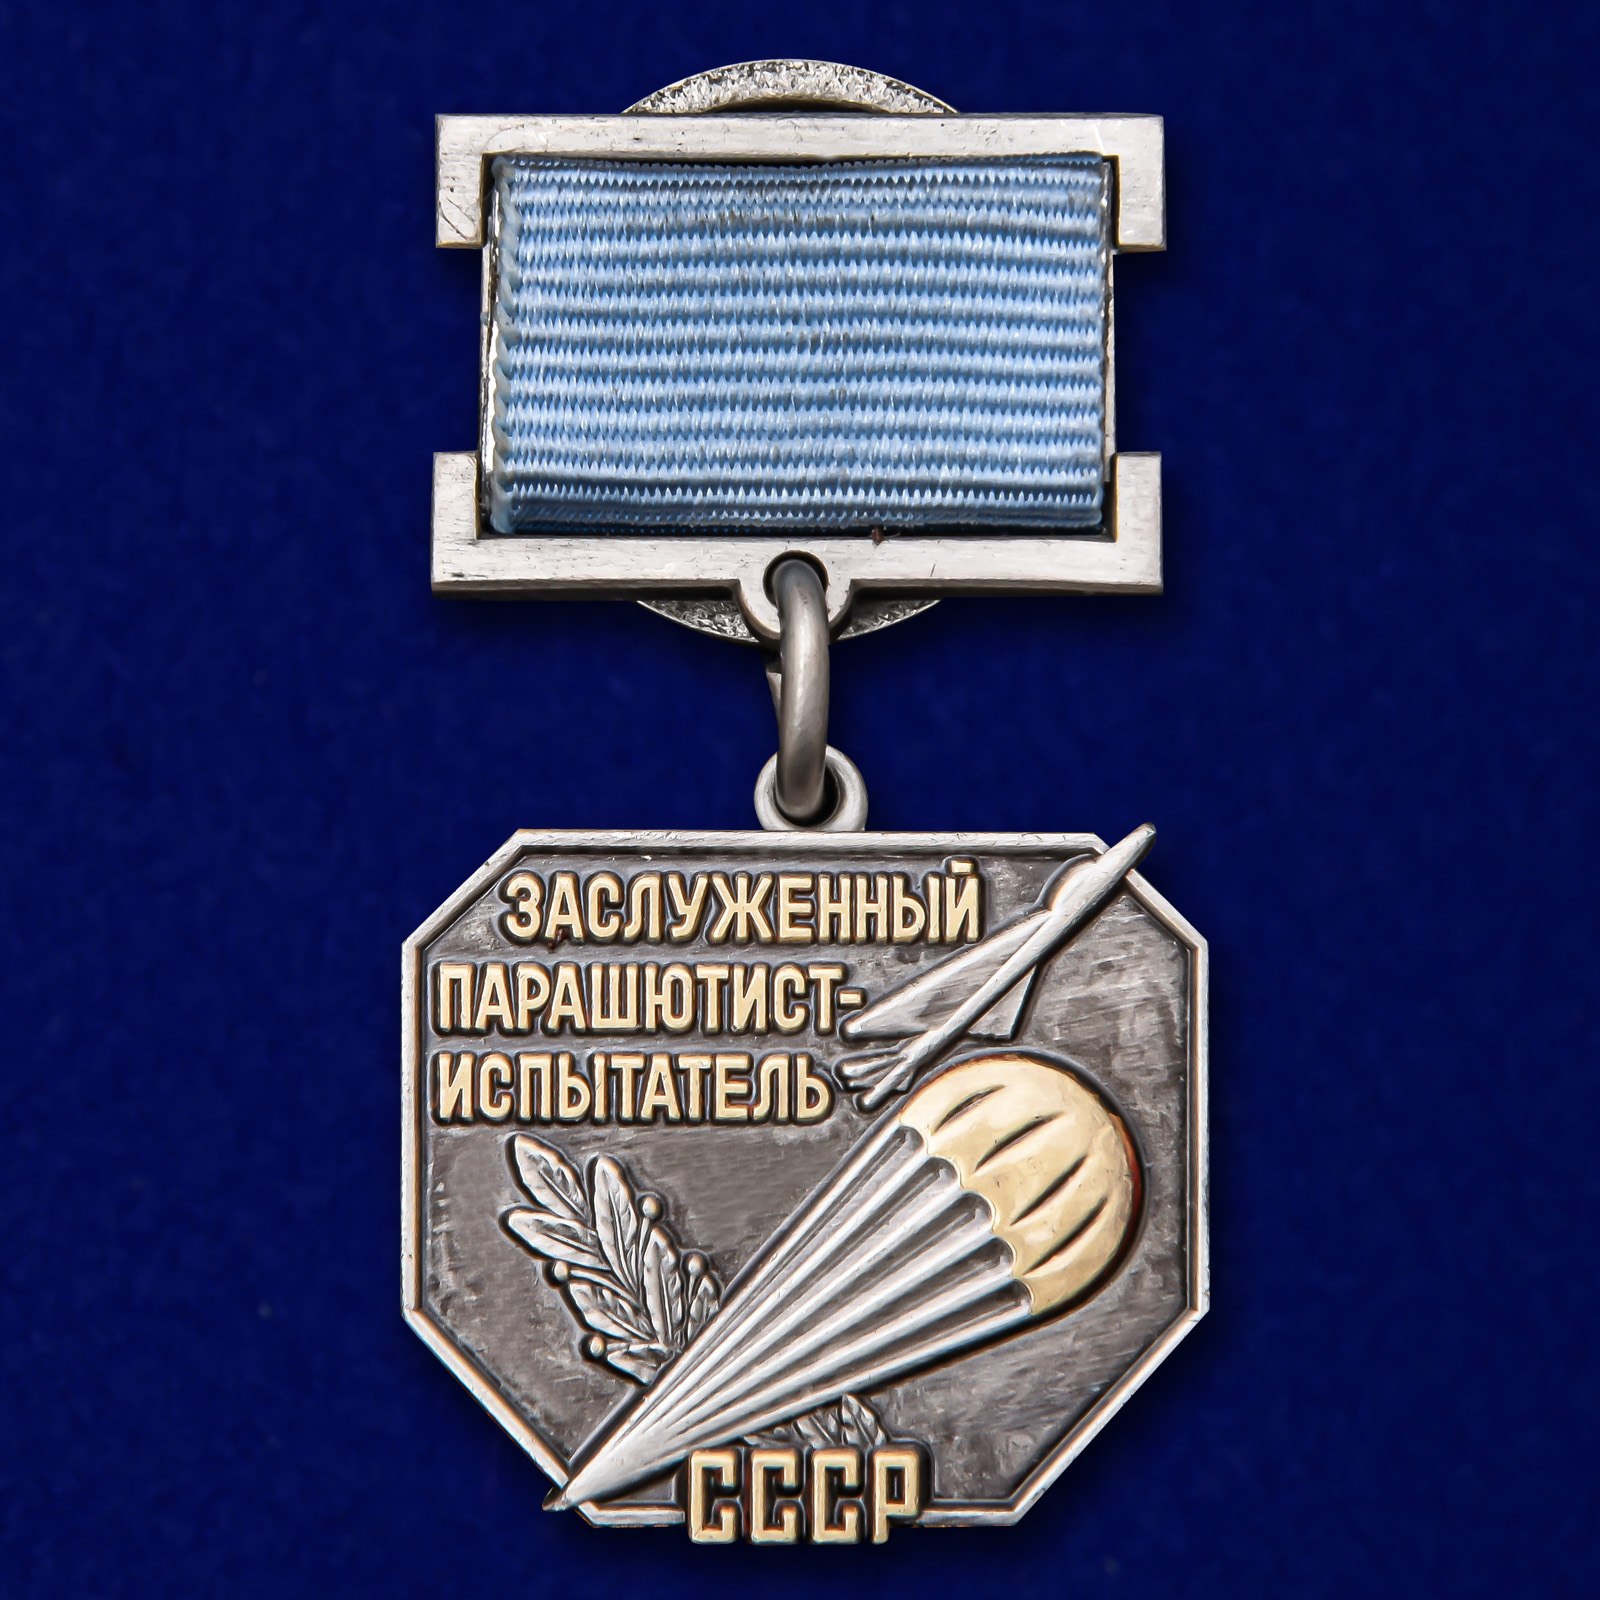 Нагрудный знак "Заслуженный парашютист-испытатель СССР" 